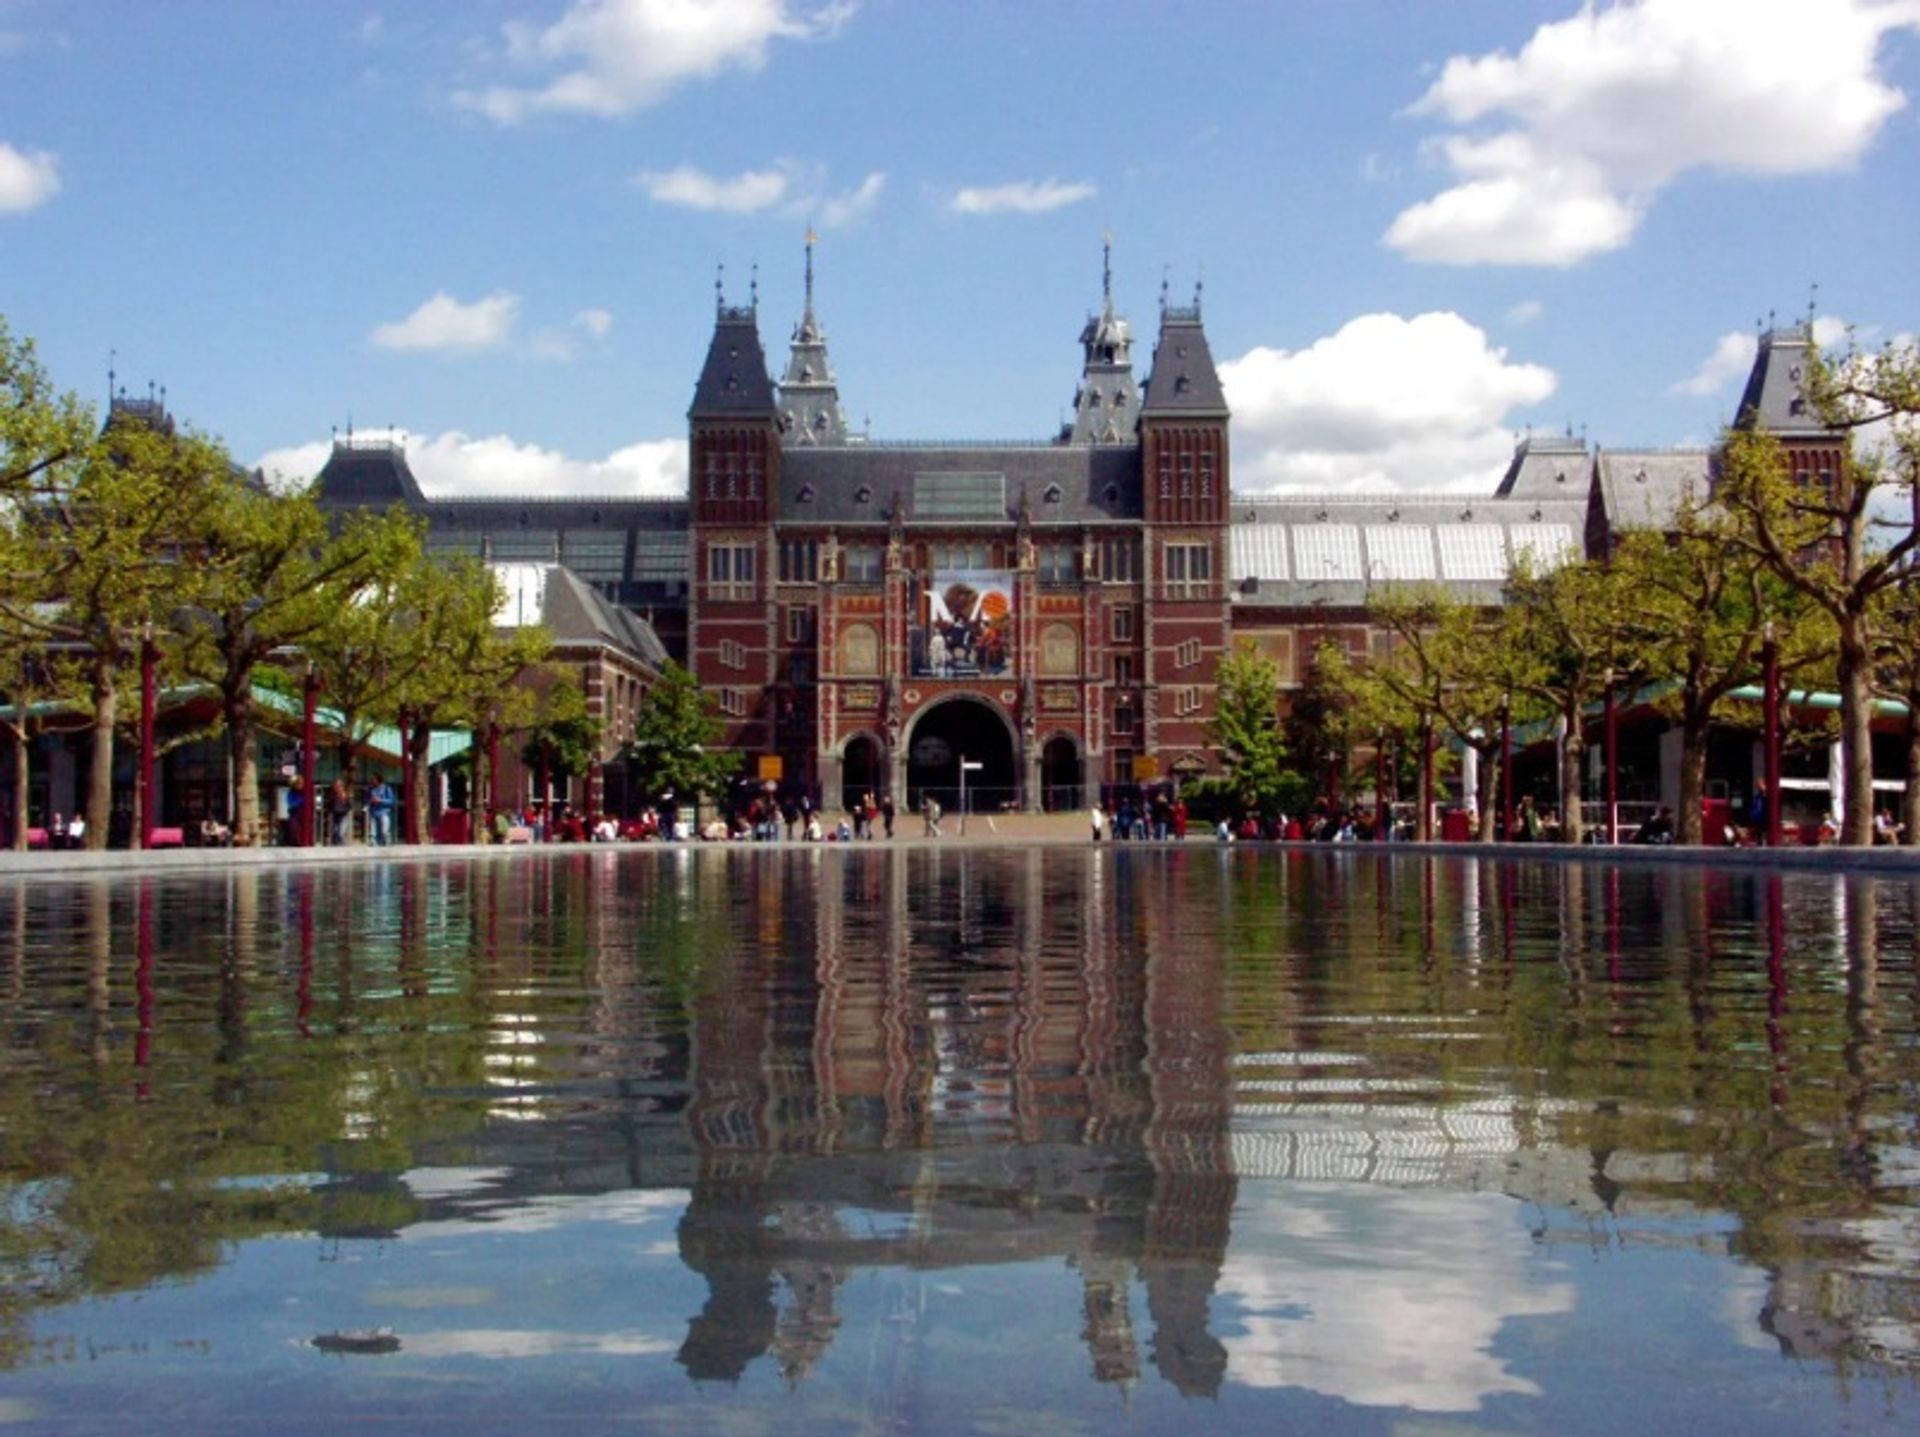 הרייקסמוזיאום באמסטרדם

צילום: Voytikof